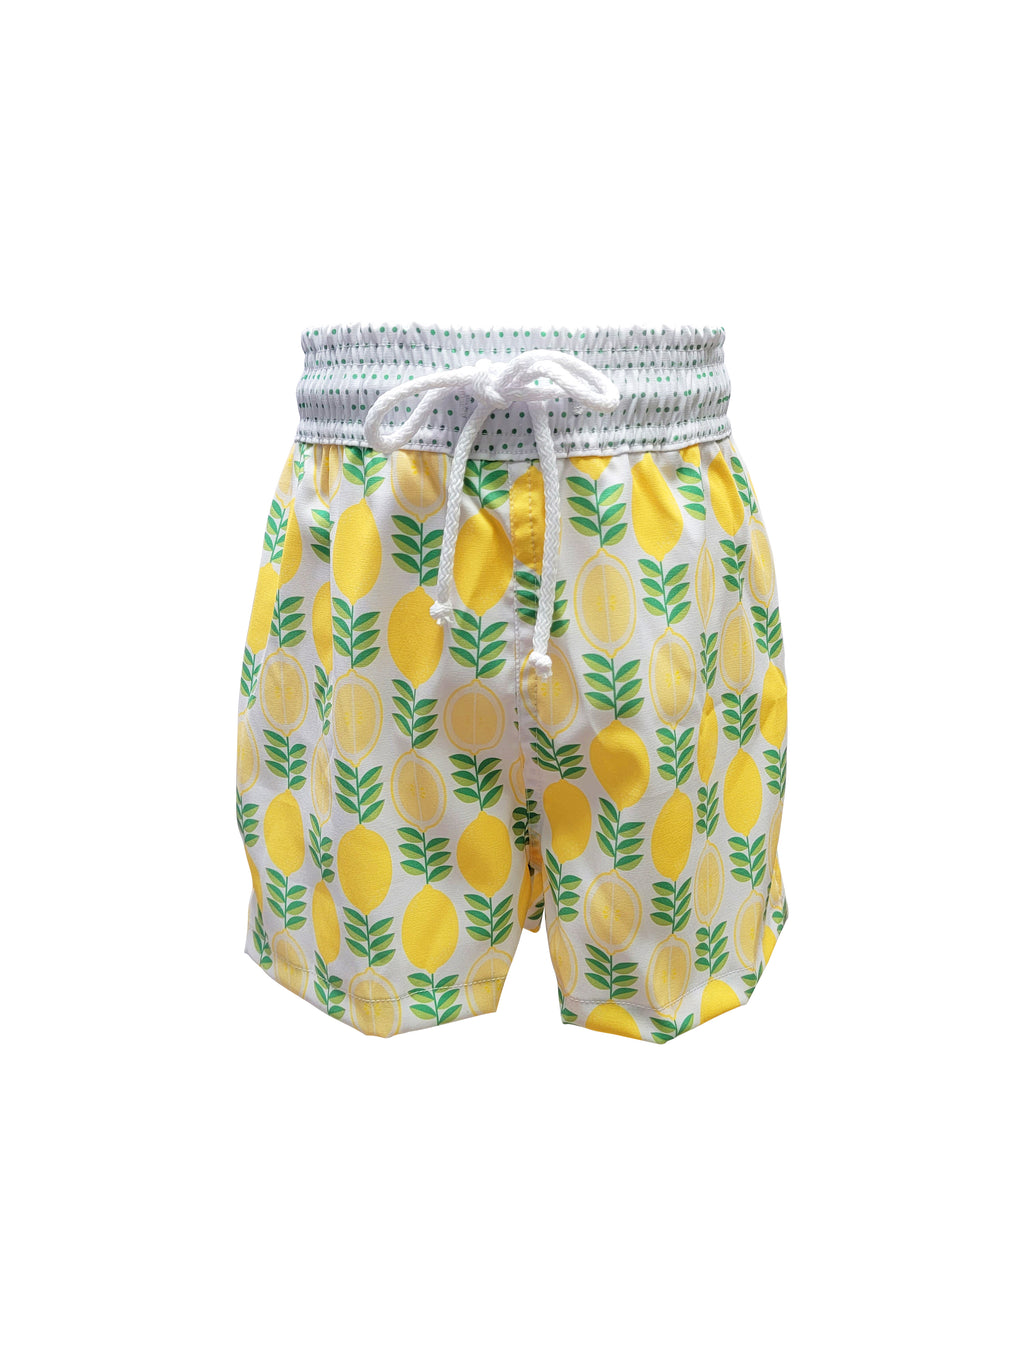 Boy's "Lemon" Swim Trunk - Little Threads Inc. Children's Clothing